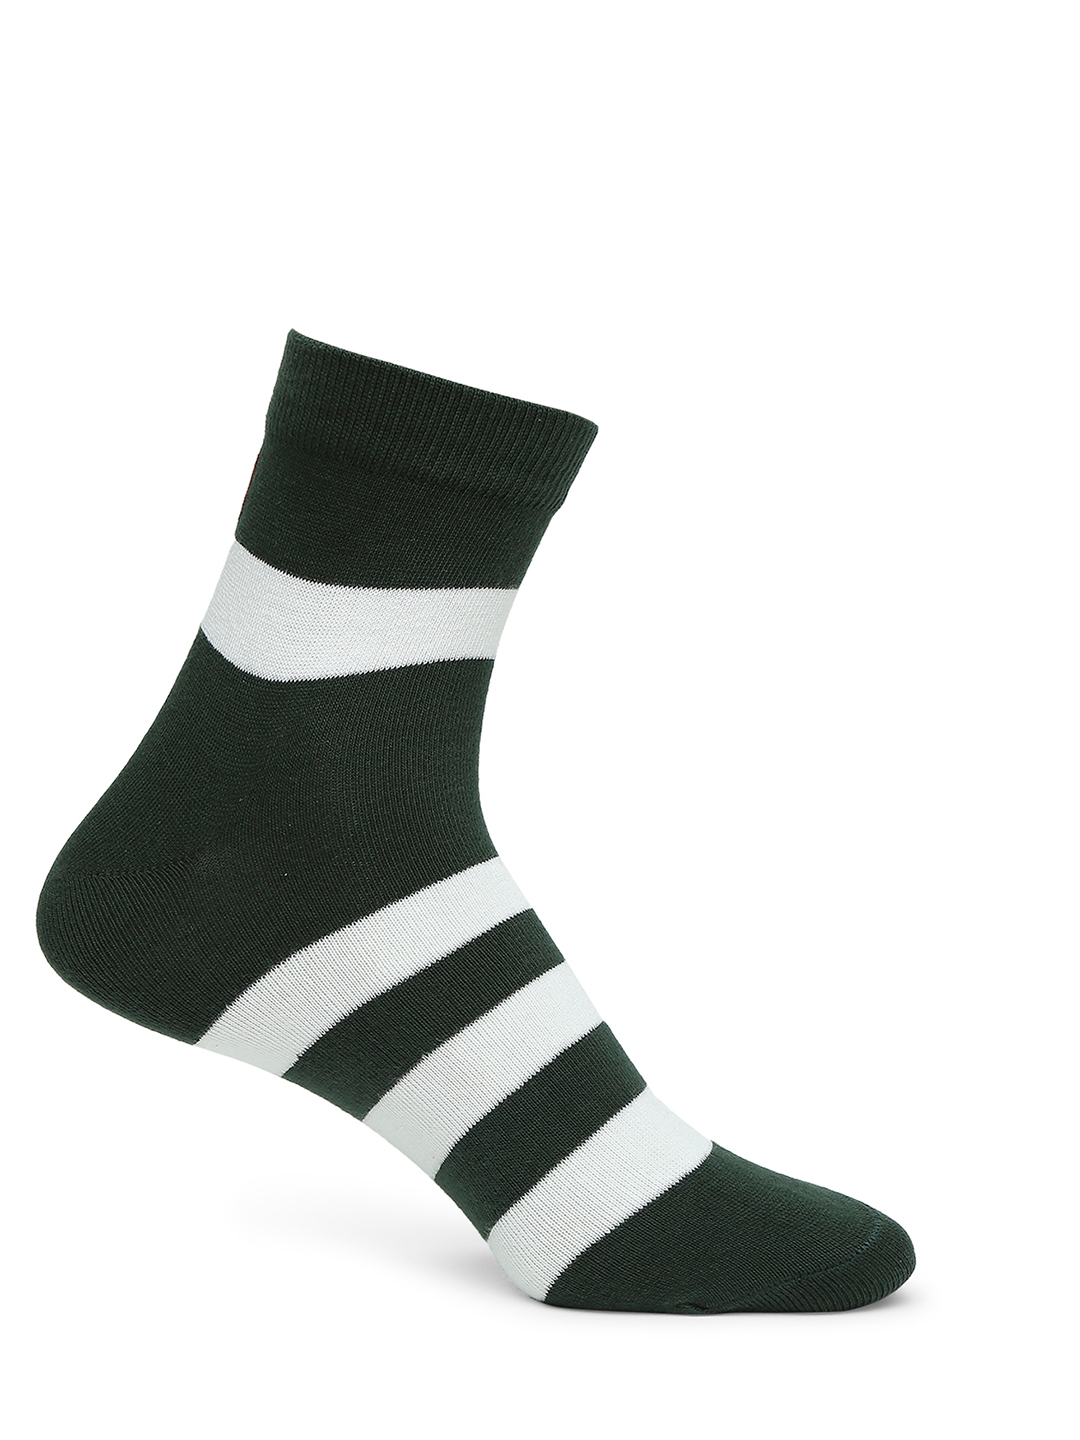 spykar | Underjeans by Spykar Premium Bottle Green & Maroon Ankle Length Socks - Pack Of 2 3